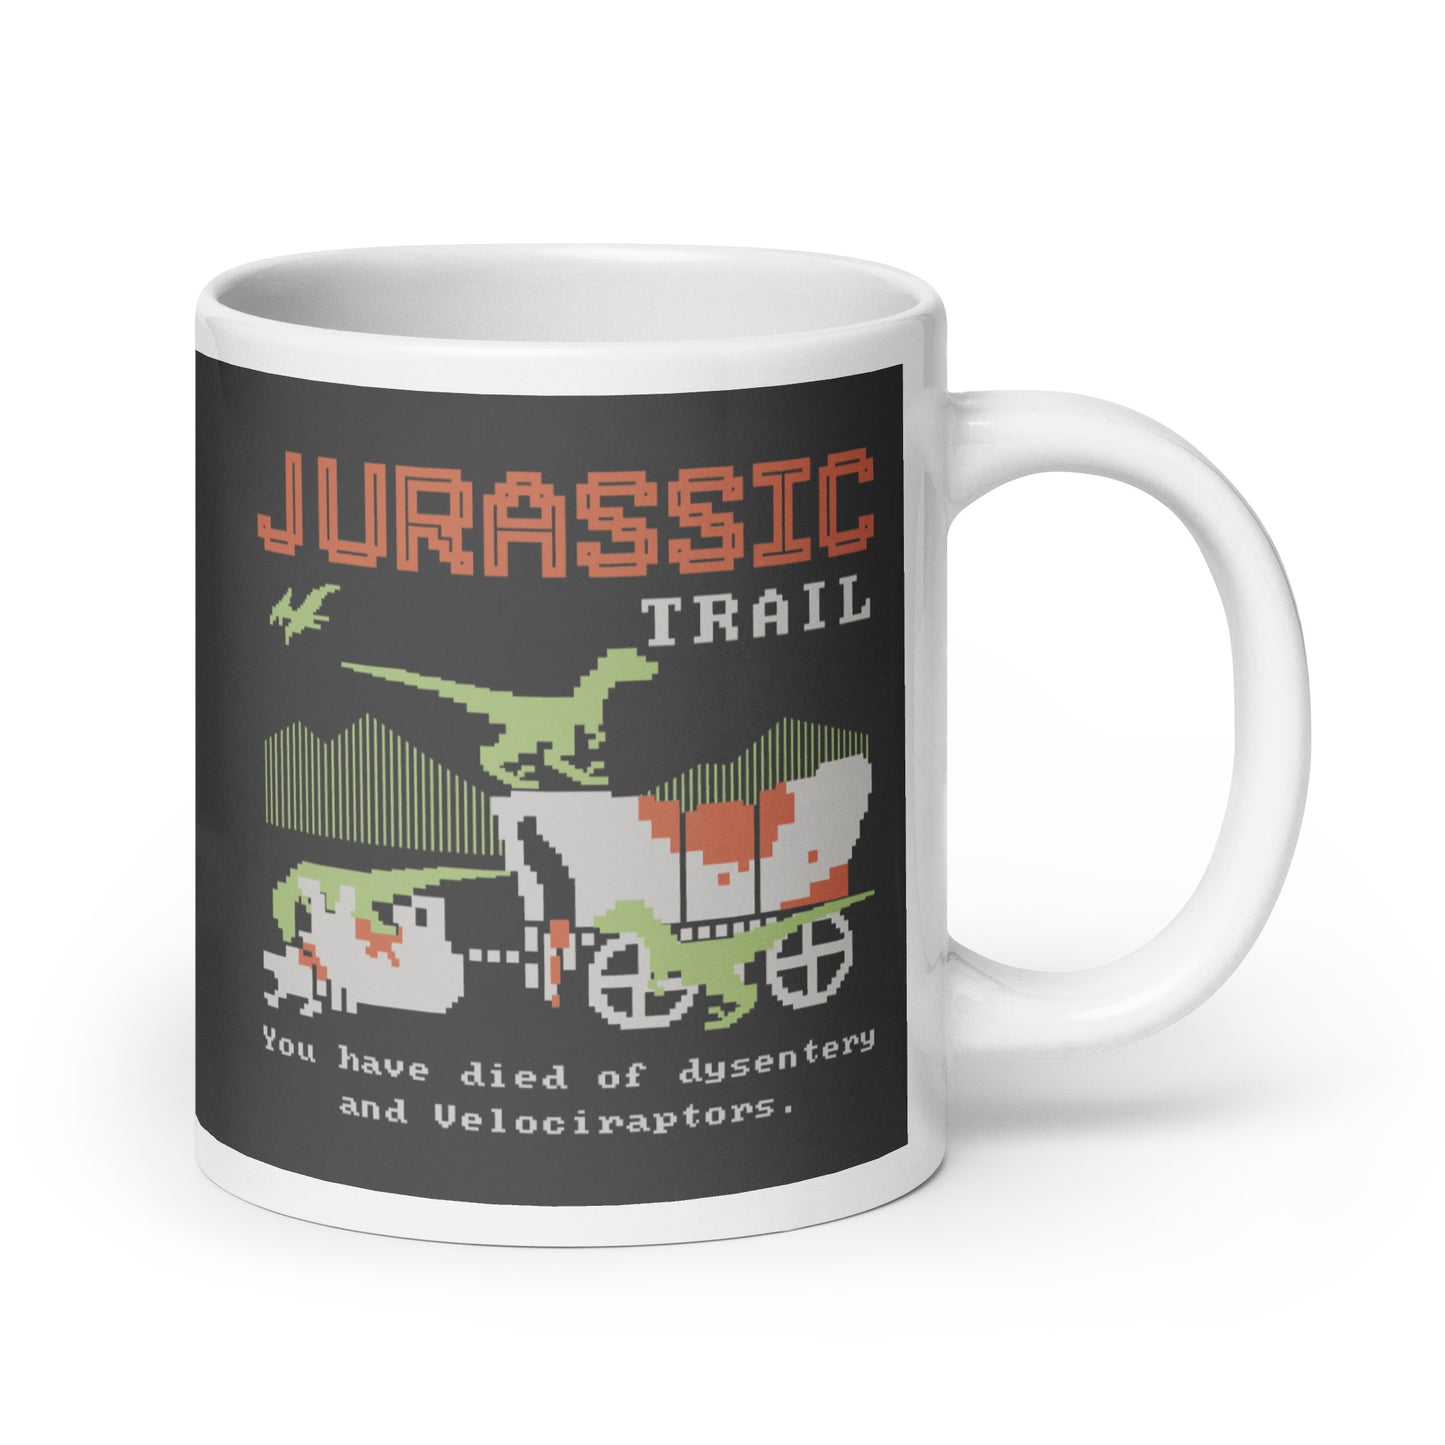 Jurassic Trail Mug